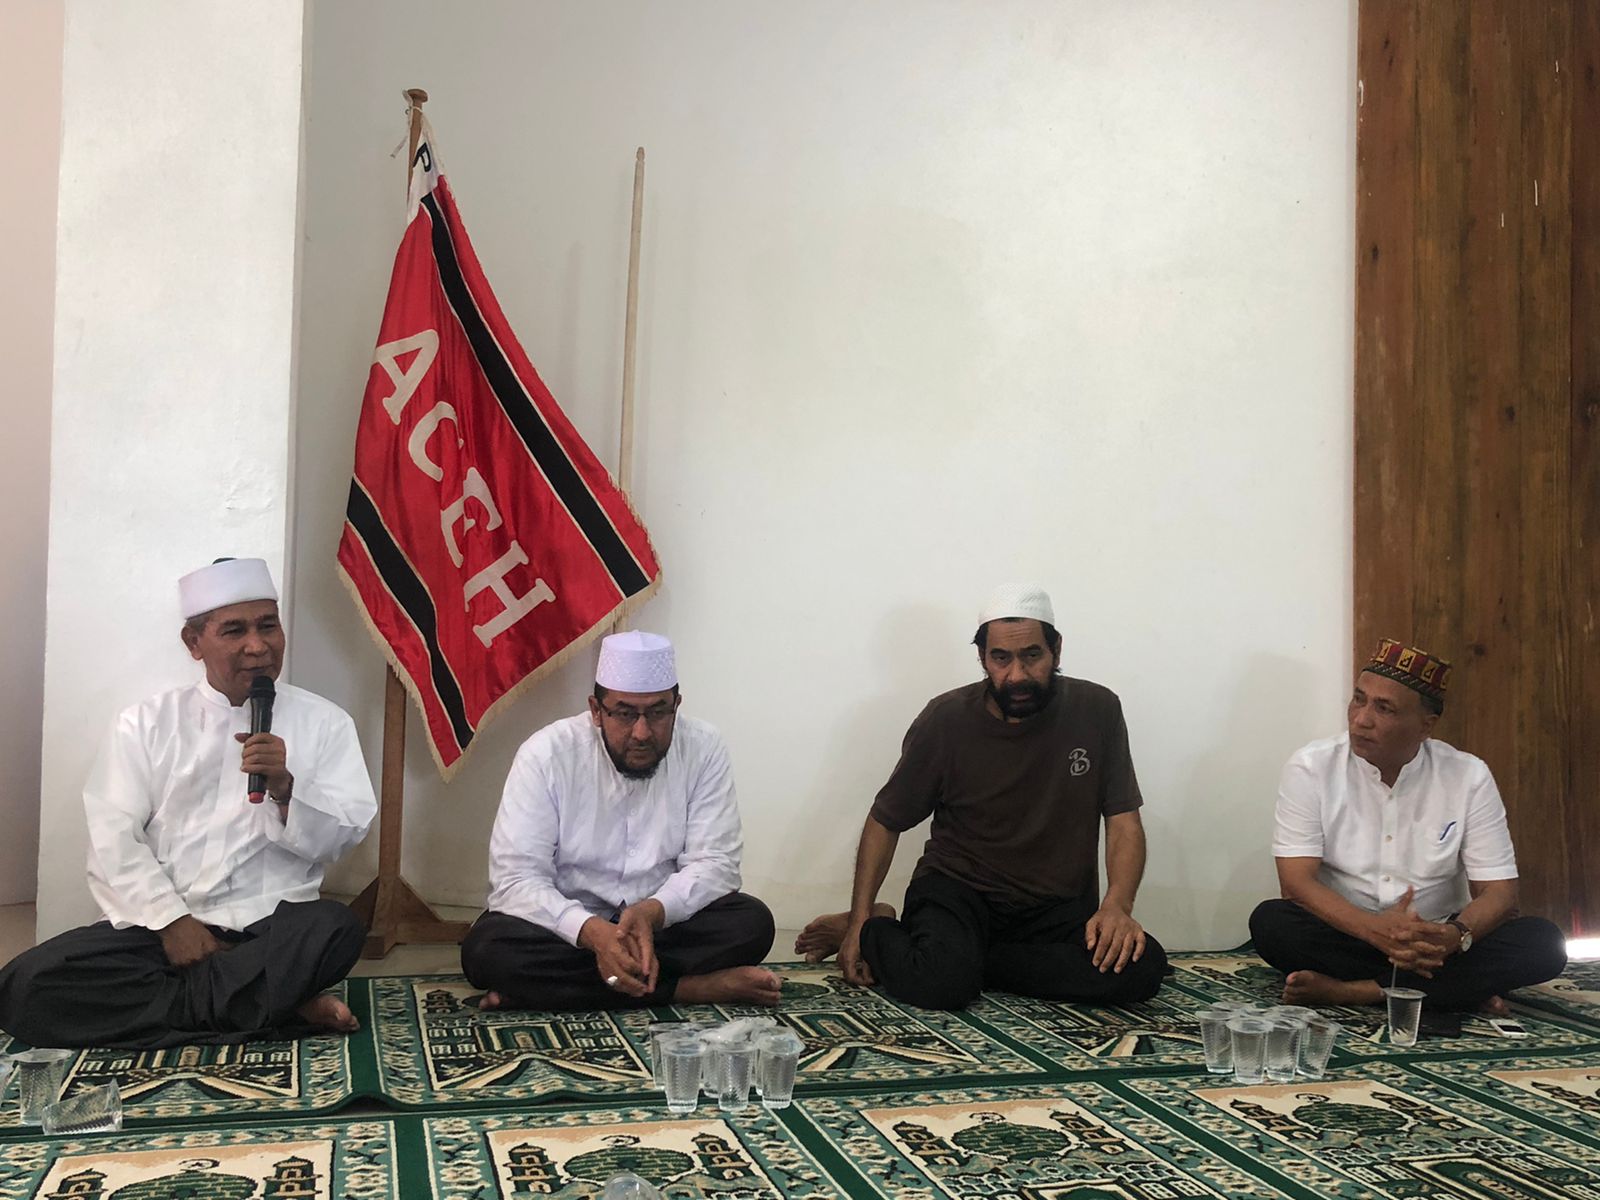 Tu Sop Isi Pengajian PA, Bahas Tentang Implementasi Syariat Islam di Aceh